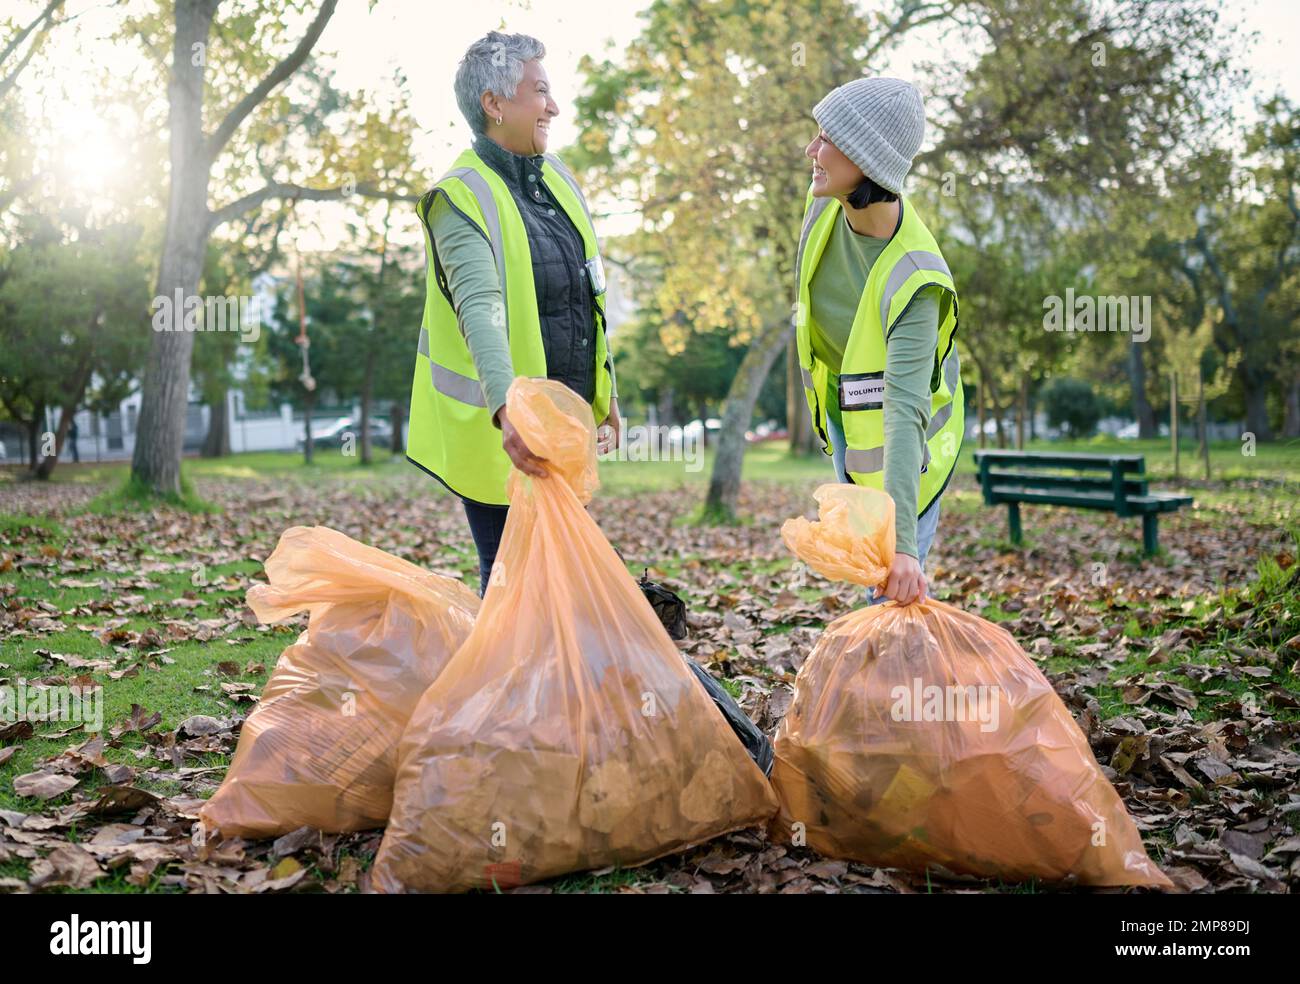 Ehrenamtliche Frauen, gemeinnützige Arbeit und Putzpark mit Müllsack für eine saubere Umgebung. Team spricht und hilft mit Müll, um umweltfreundlich zu sein Stockfoto